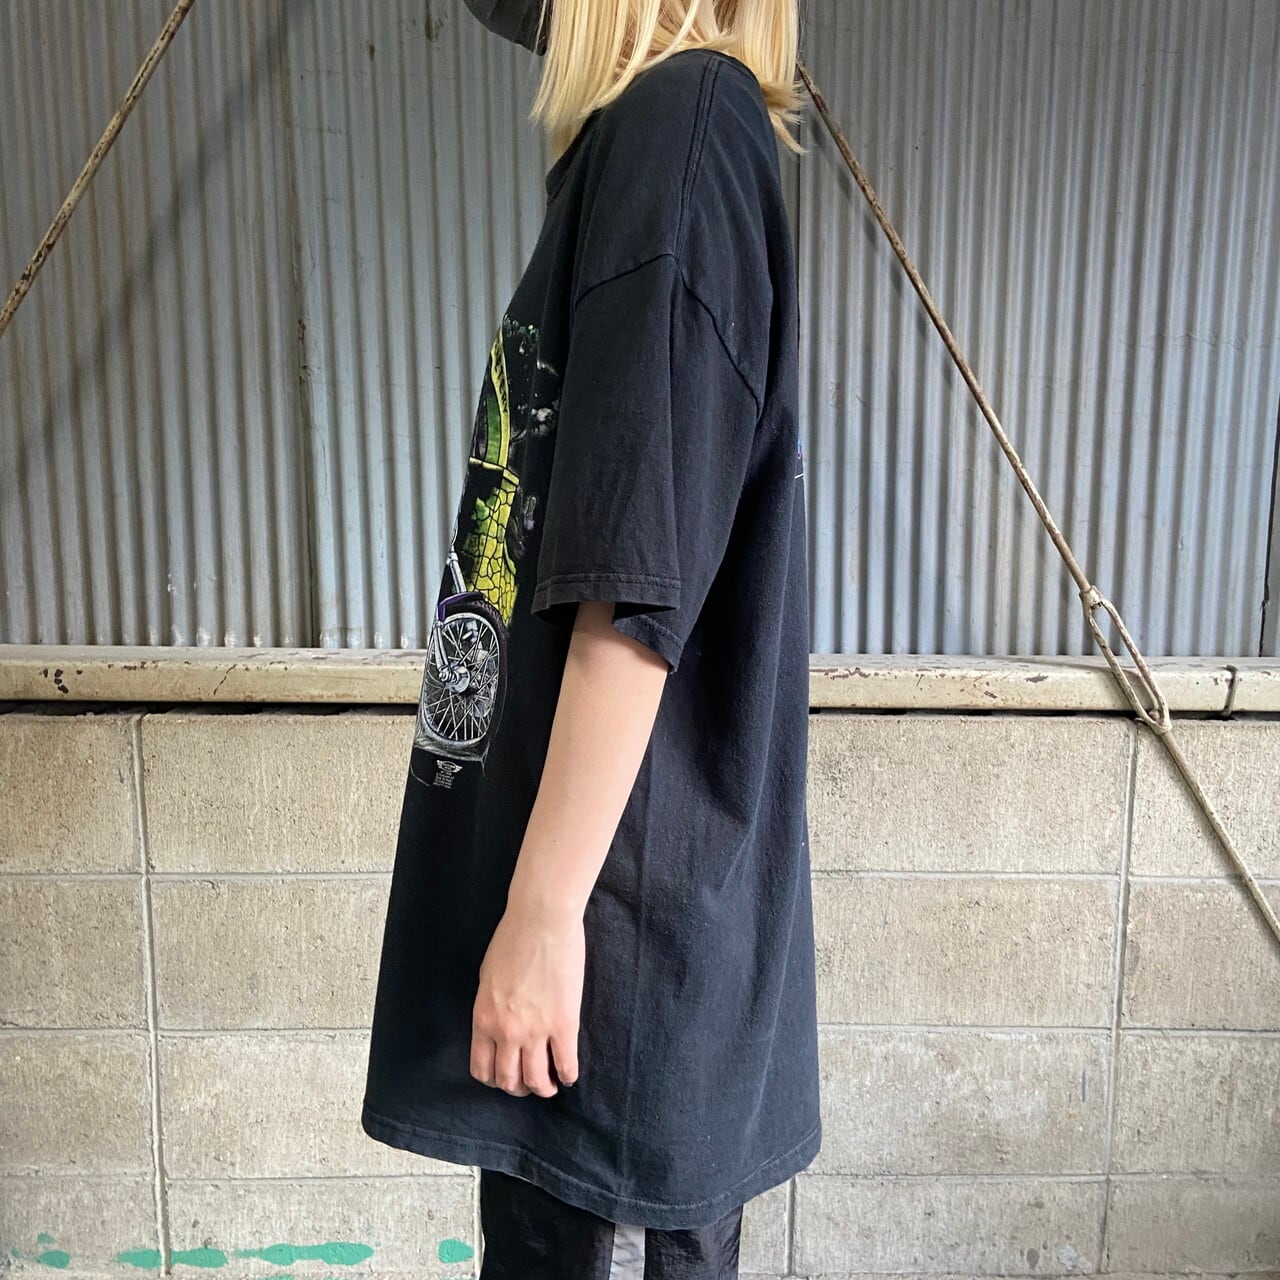 【00’s】バイクイベント ロック ファンキー プリント Tシャツ 黒 XL